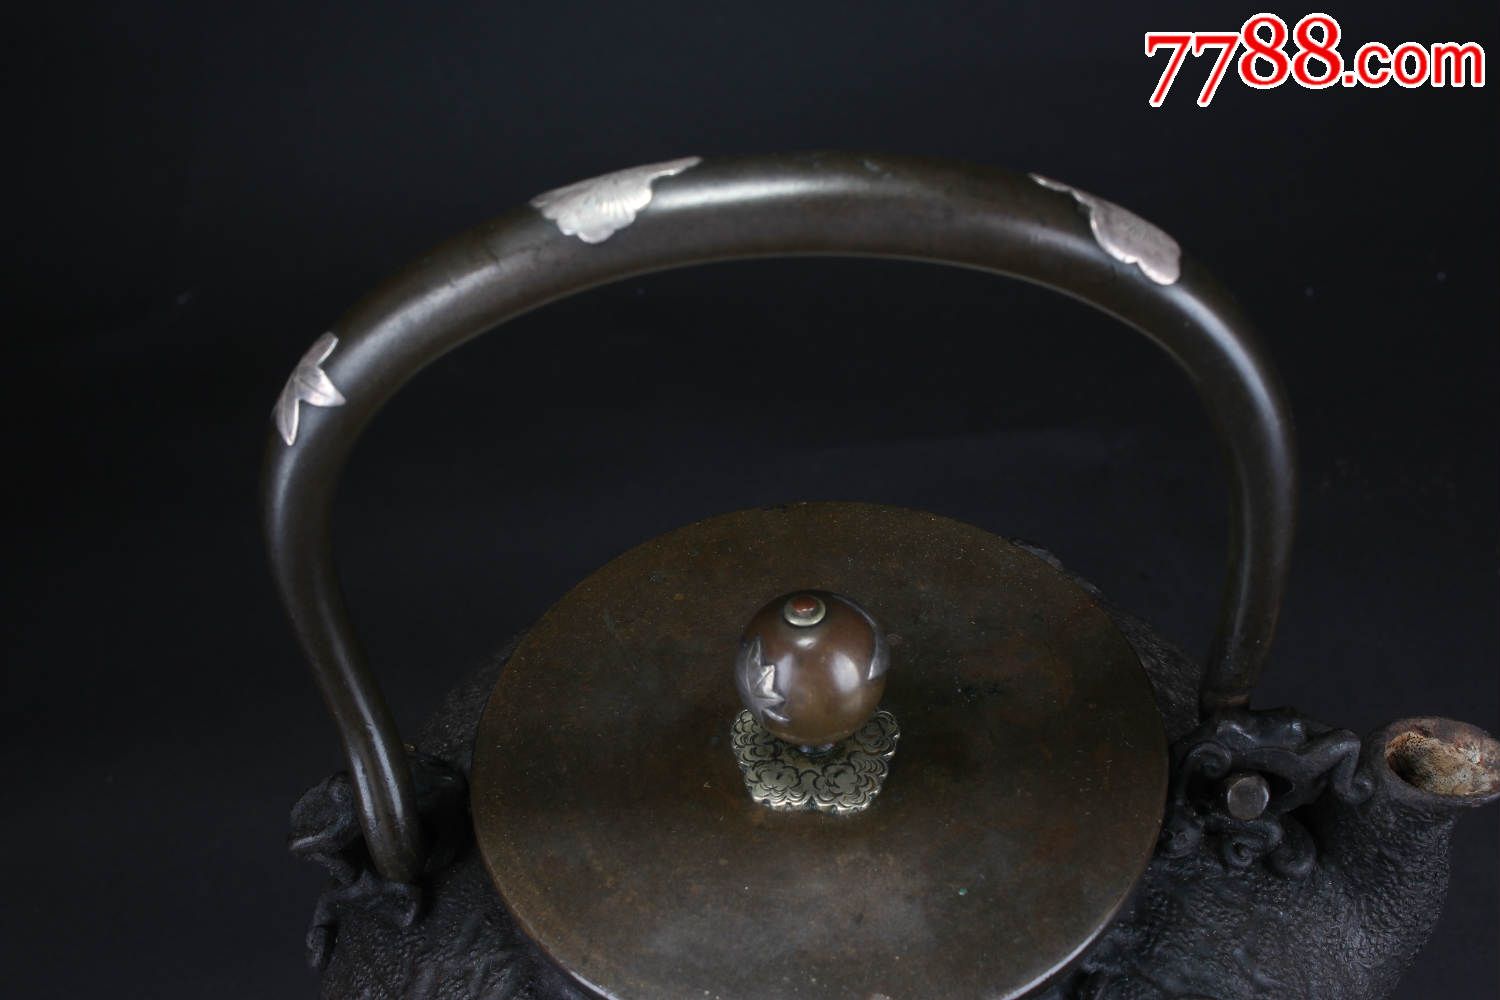 昭和时期顶级错银菊纹龟文堂制铁壶-价格:250